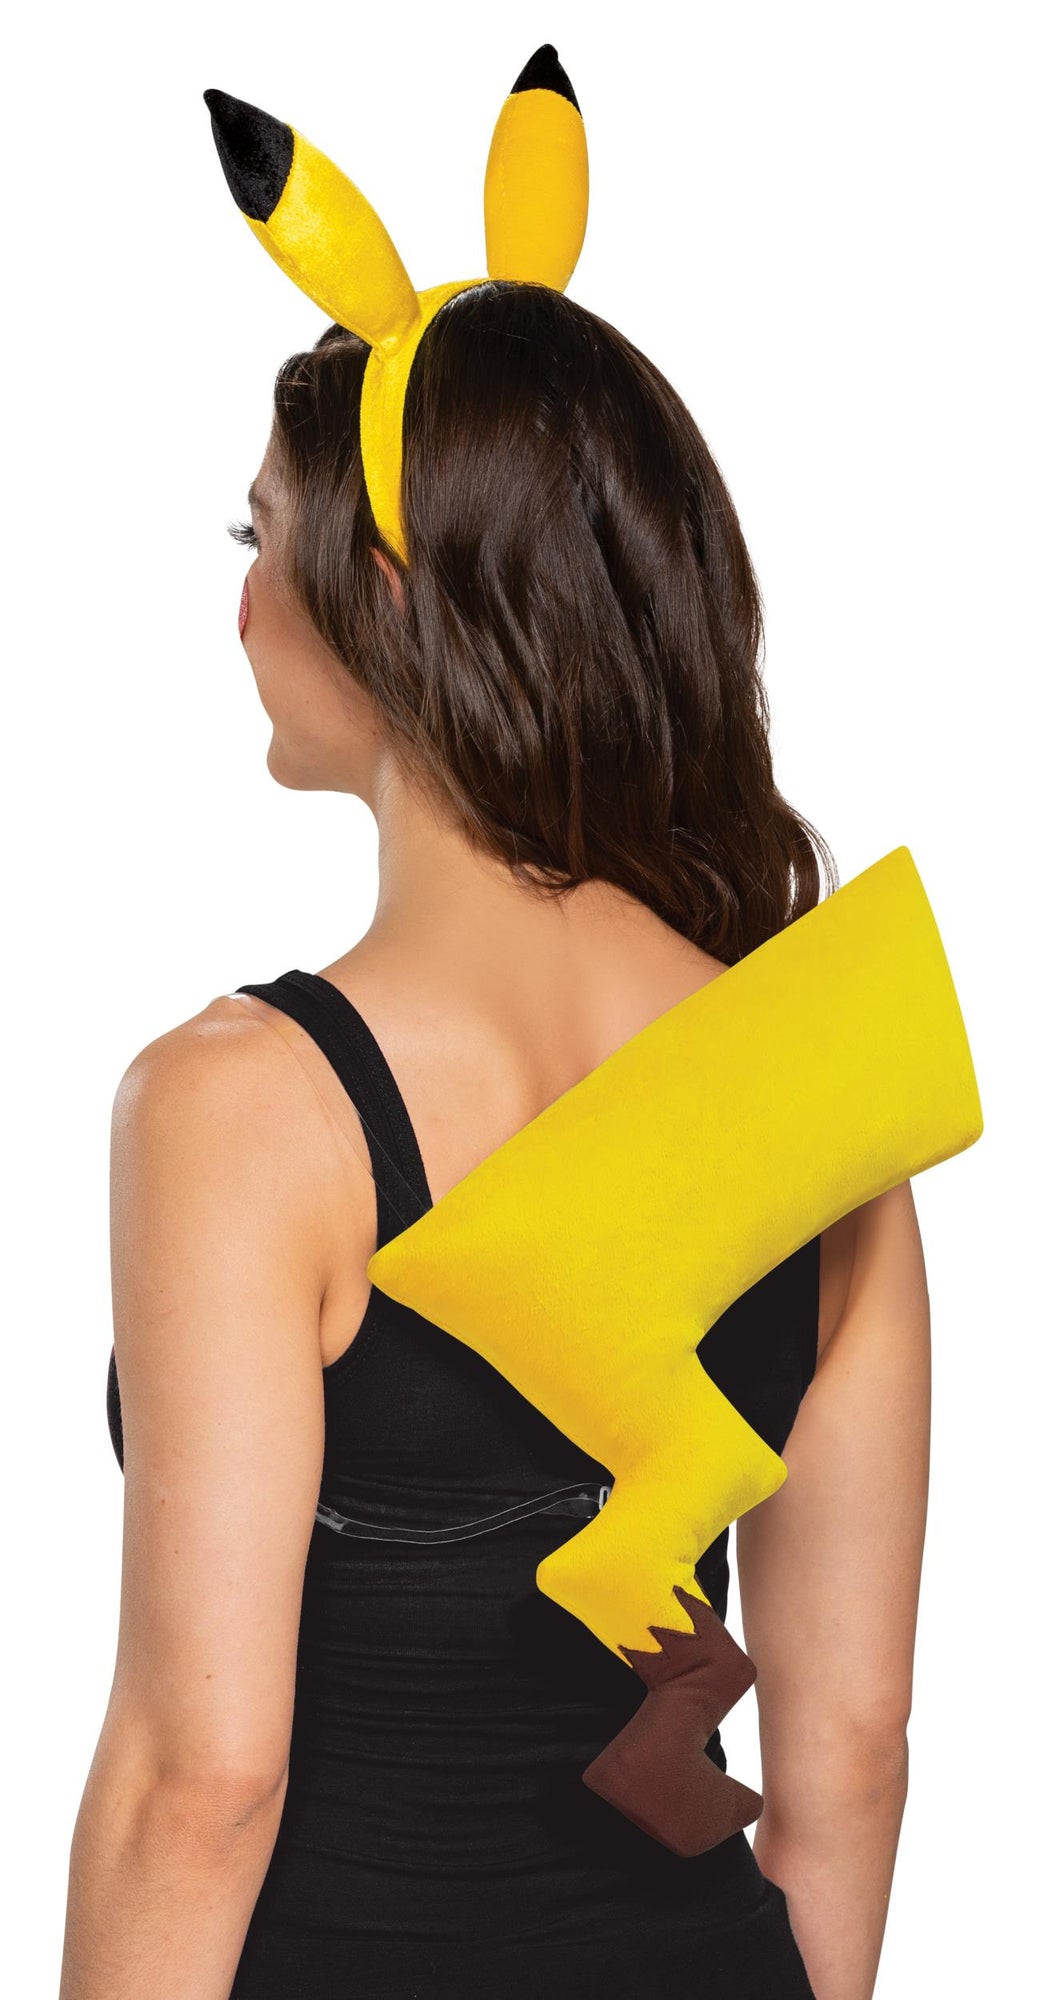 Pikachu Pokemon Yellow Headband and Tail Kit Adult